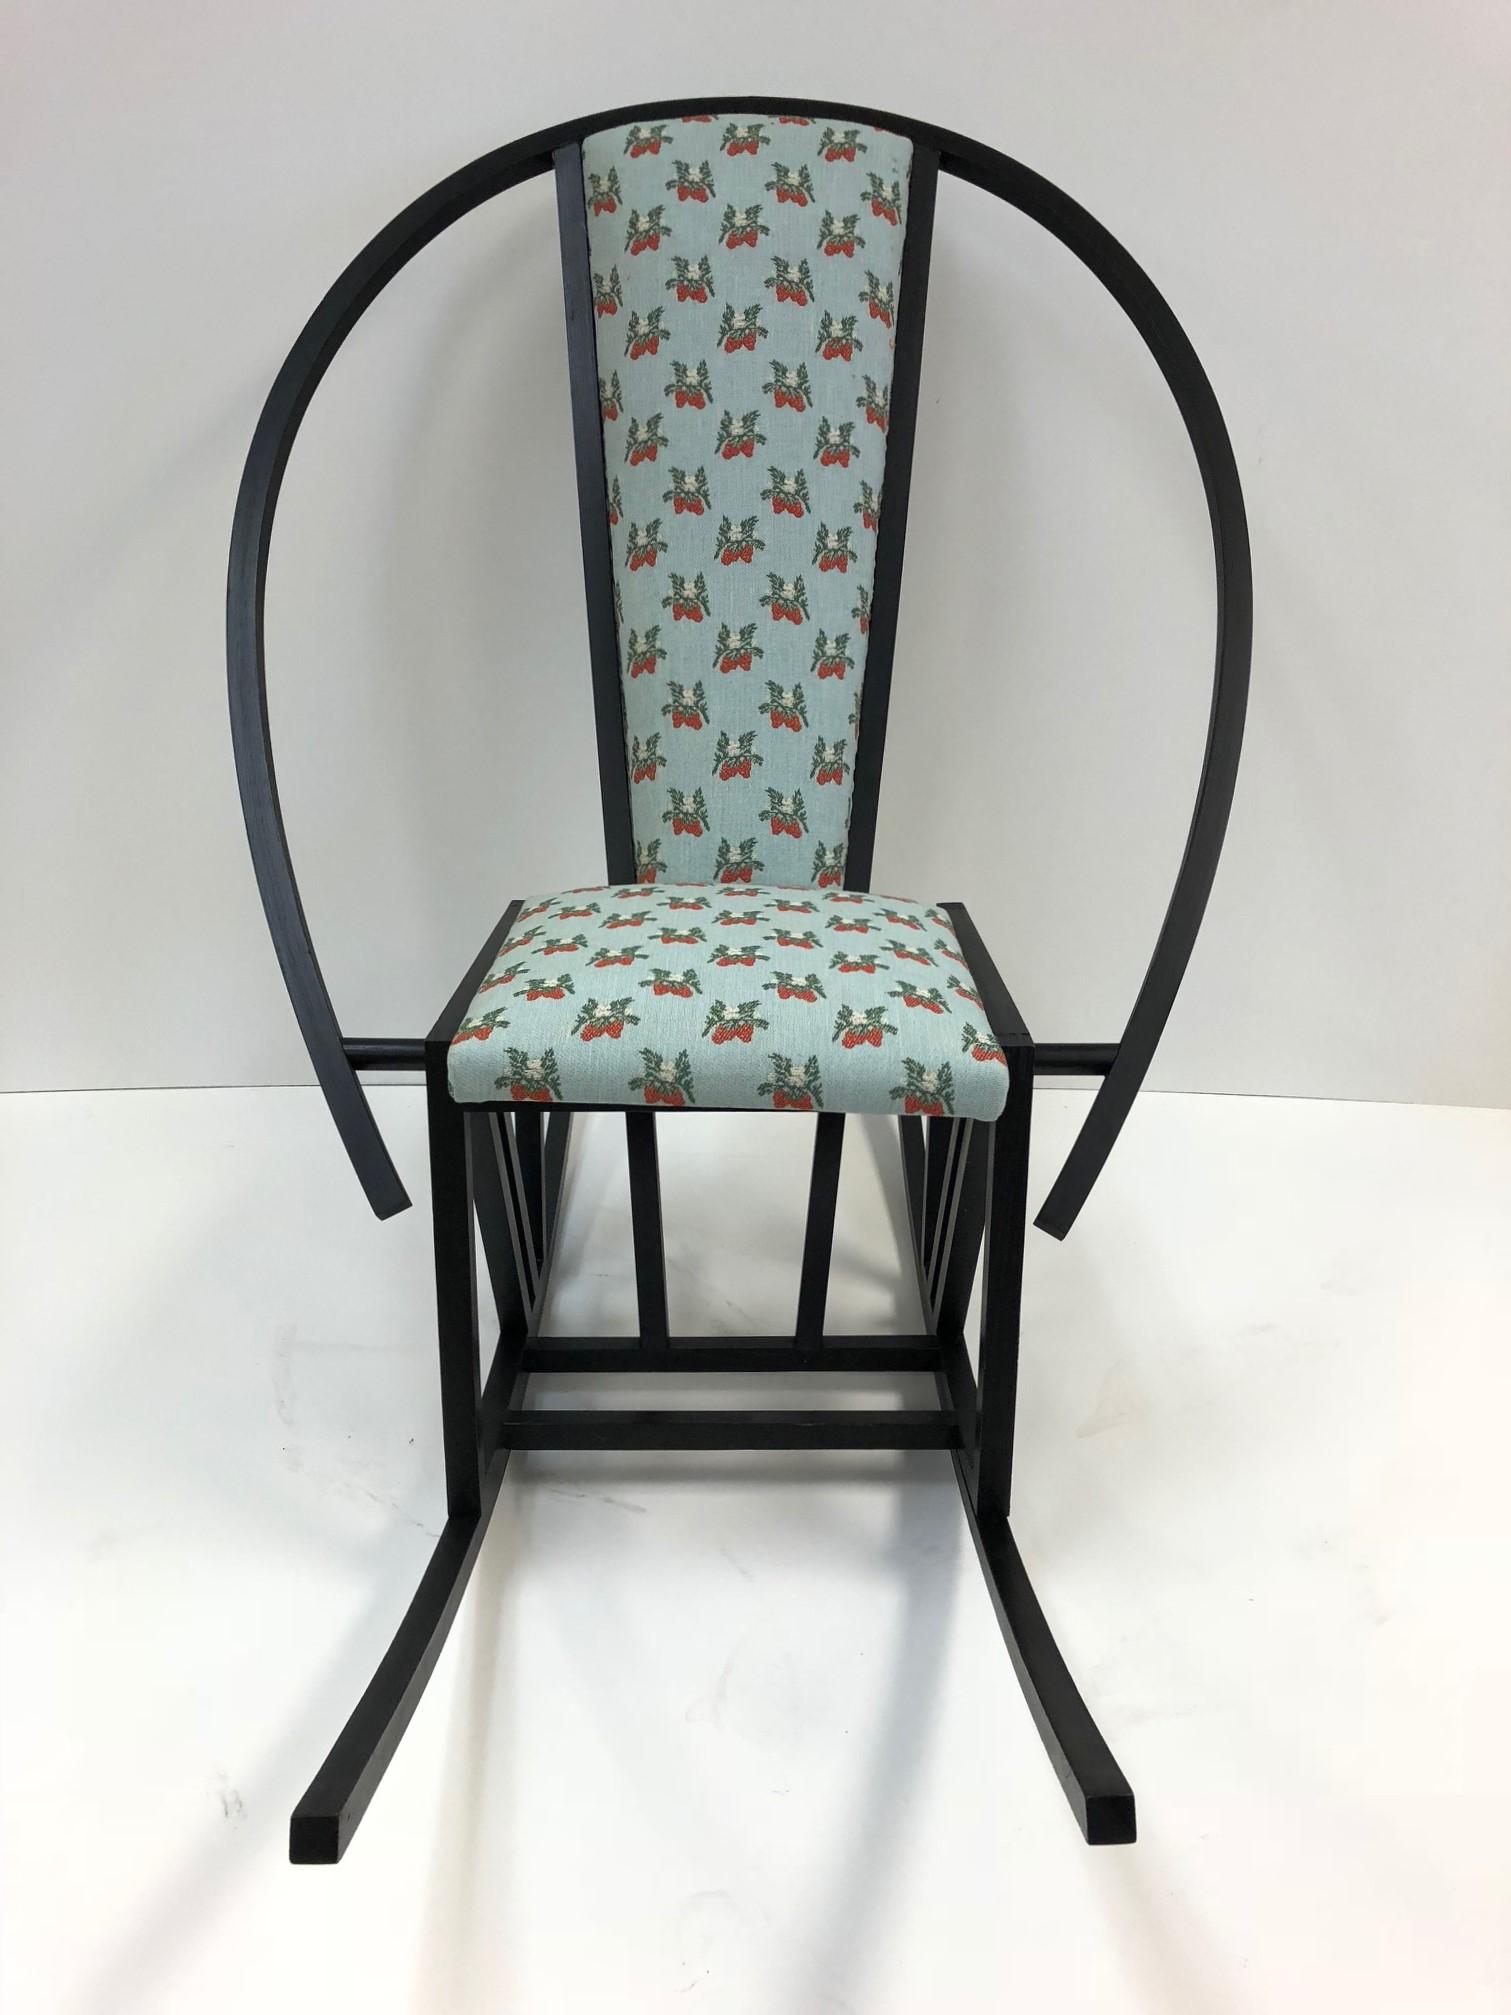 Chaise à bascule Pascal Mourgue avec une structure en bouleau teinté. Le cadre est bien construit.